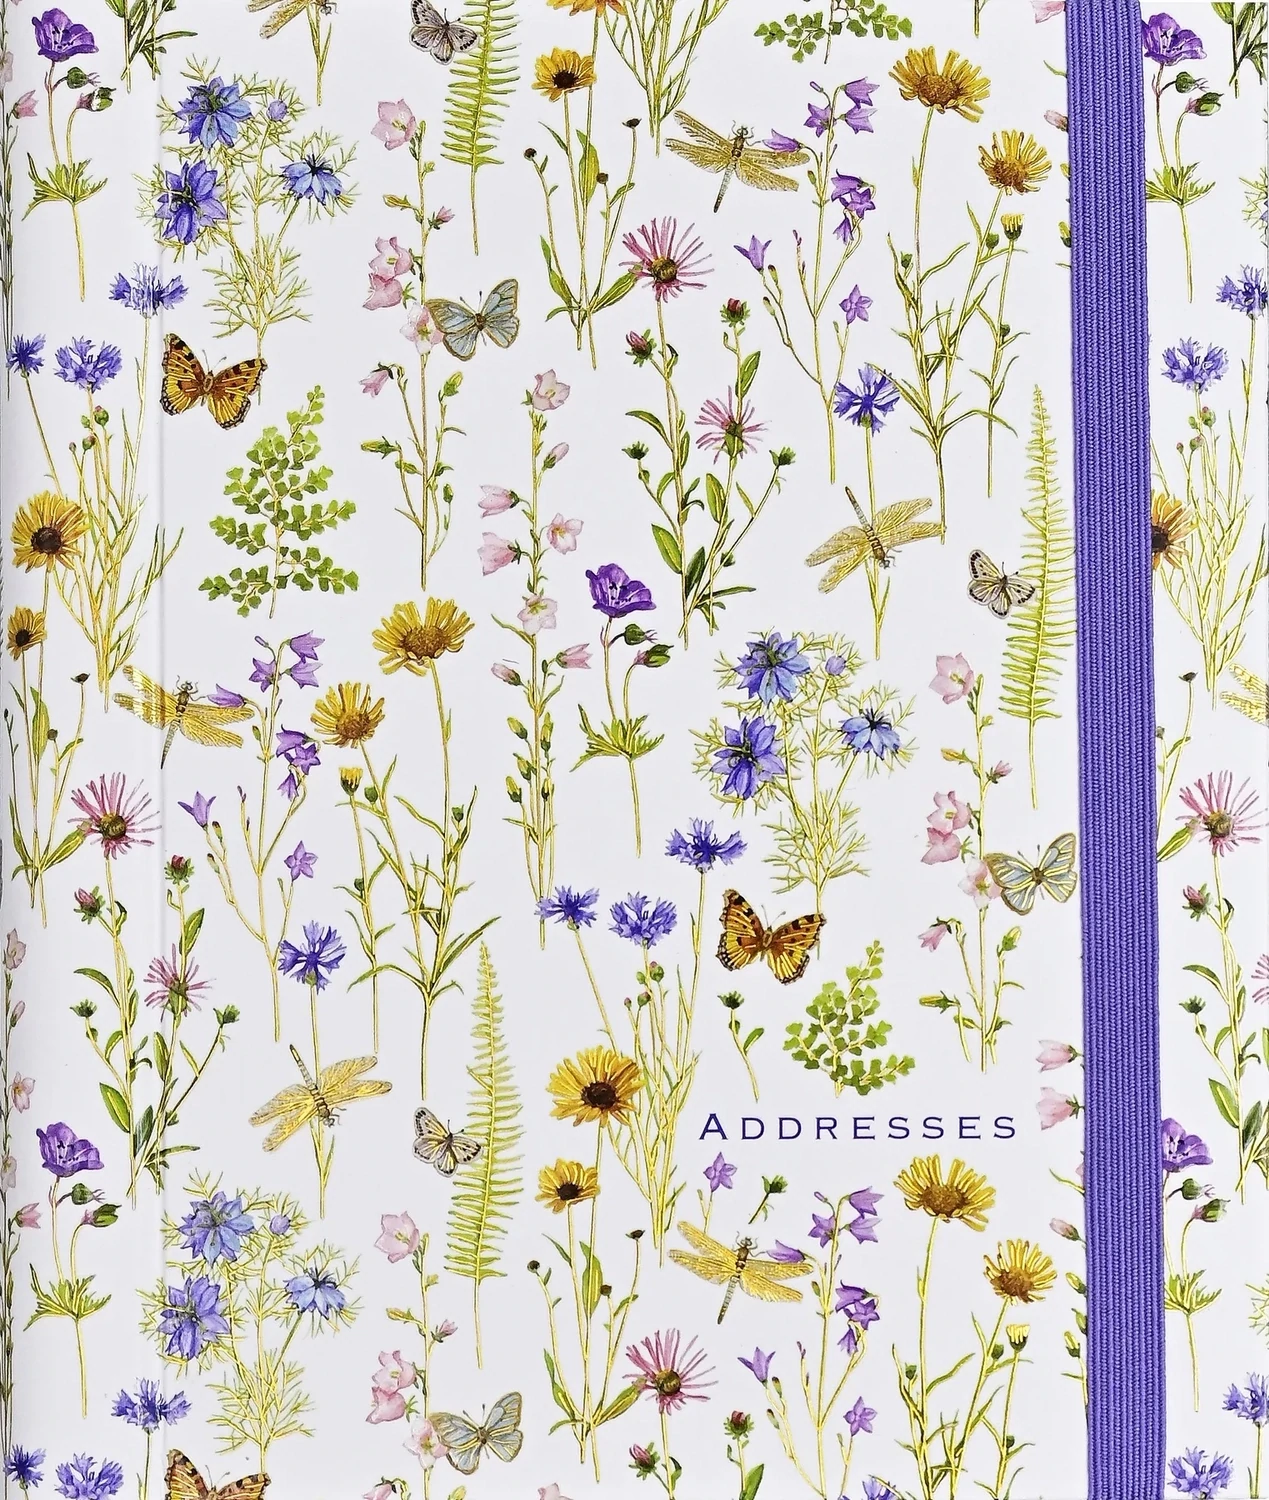 PP Wildflower Garden Address Book